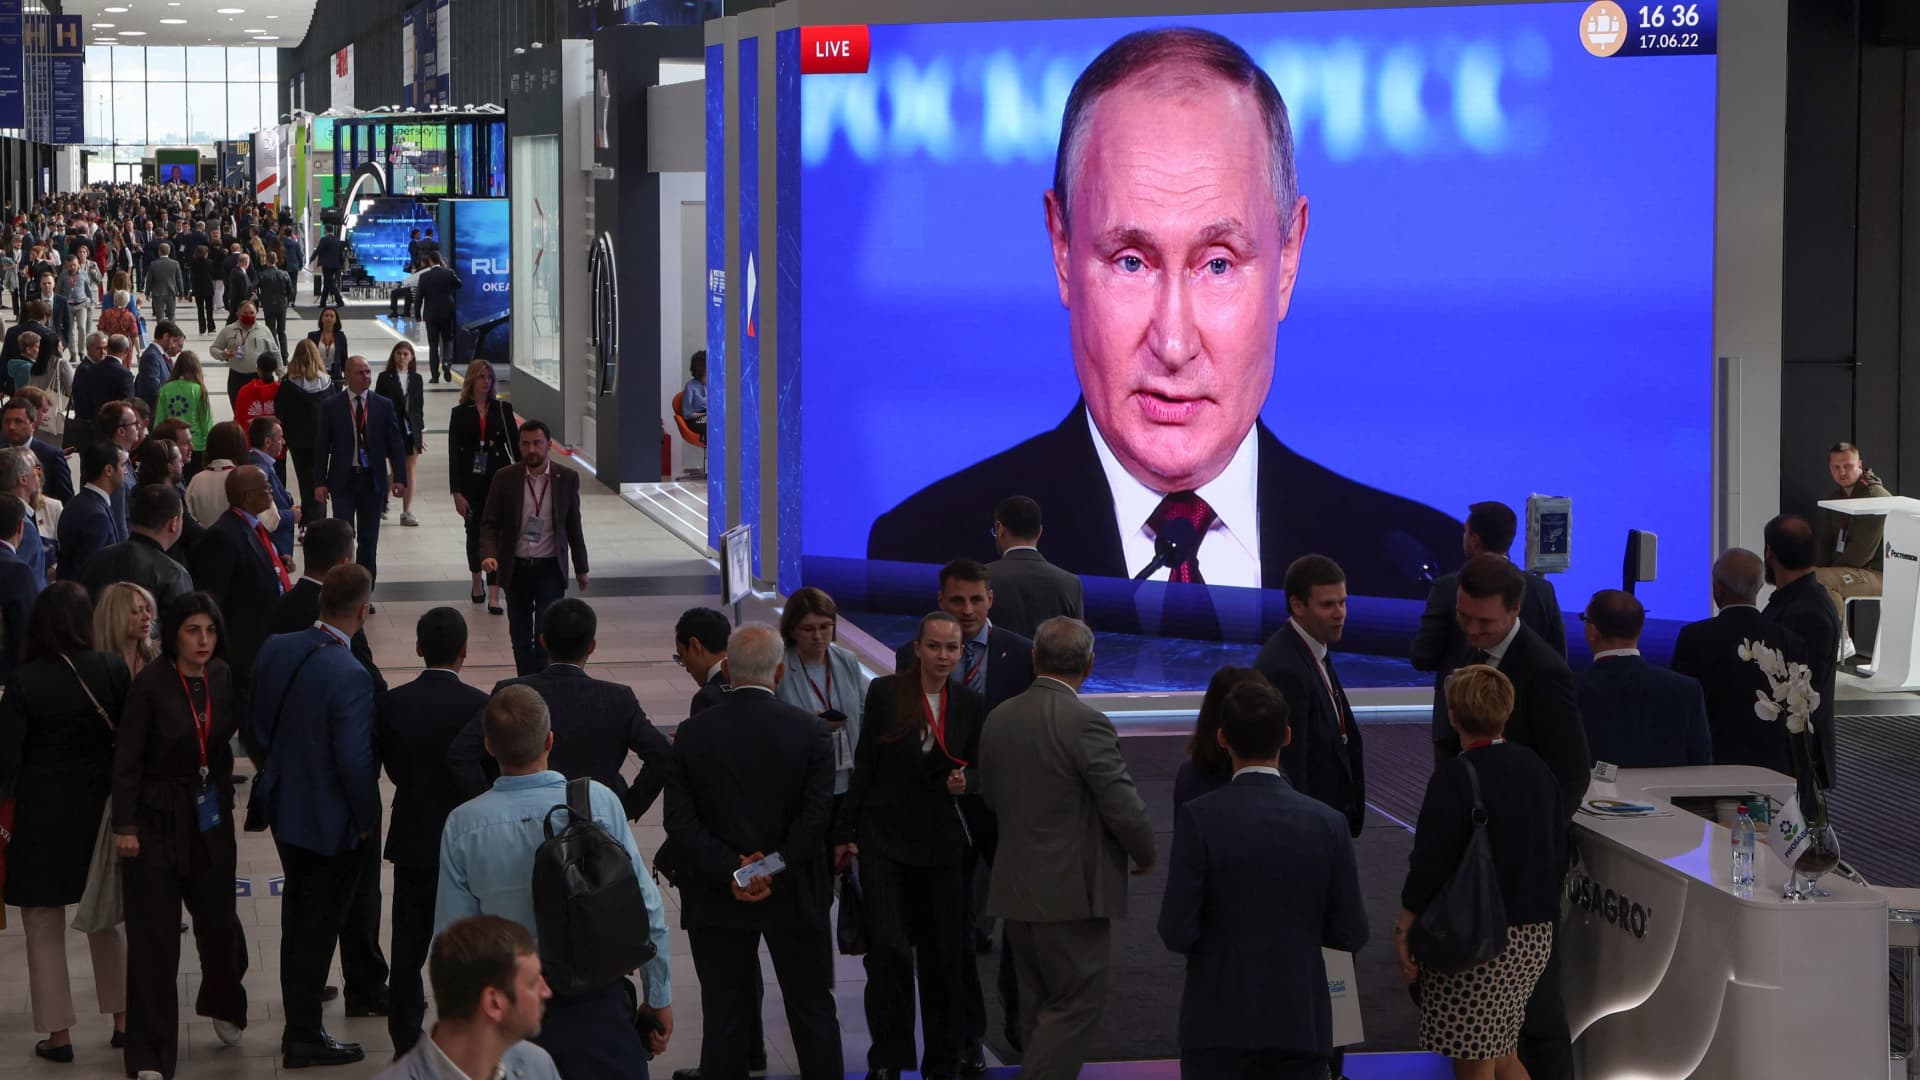 الولايات المتحدة ترد على بوتين ‘المحبط’ بعد اتهامه بالديكتاتورية